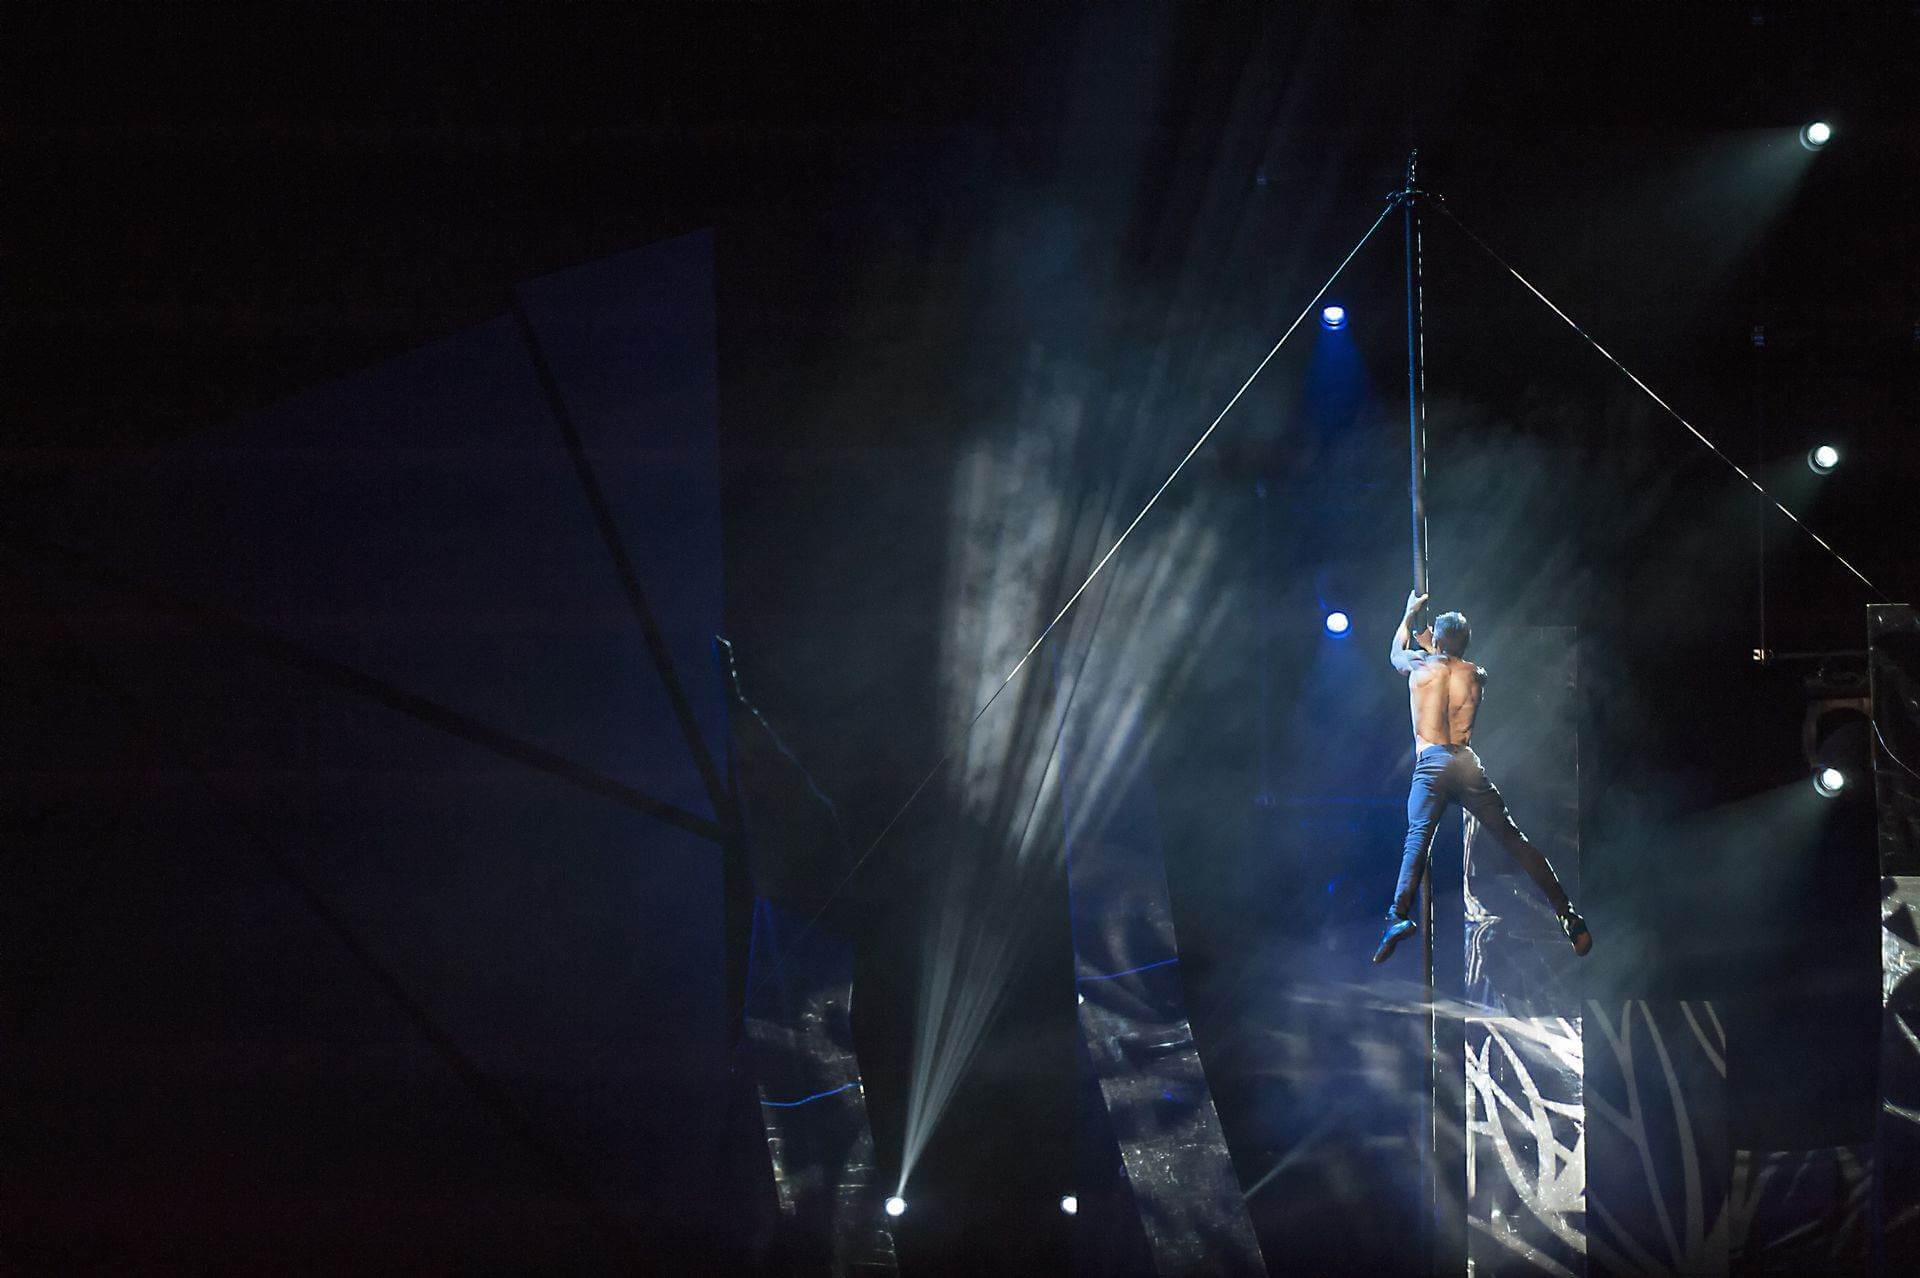 Scalada - Vision by Cirque du Soleil 2016: Barra vertical amb acrobàcies